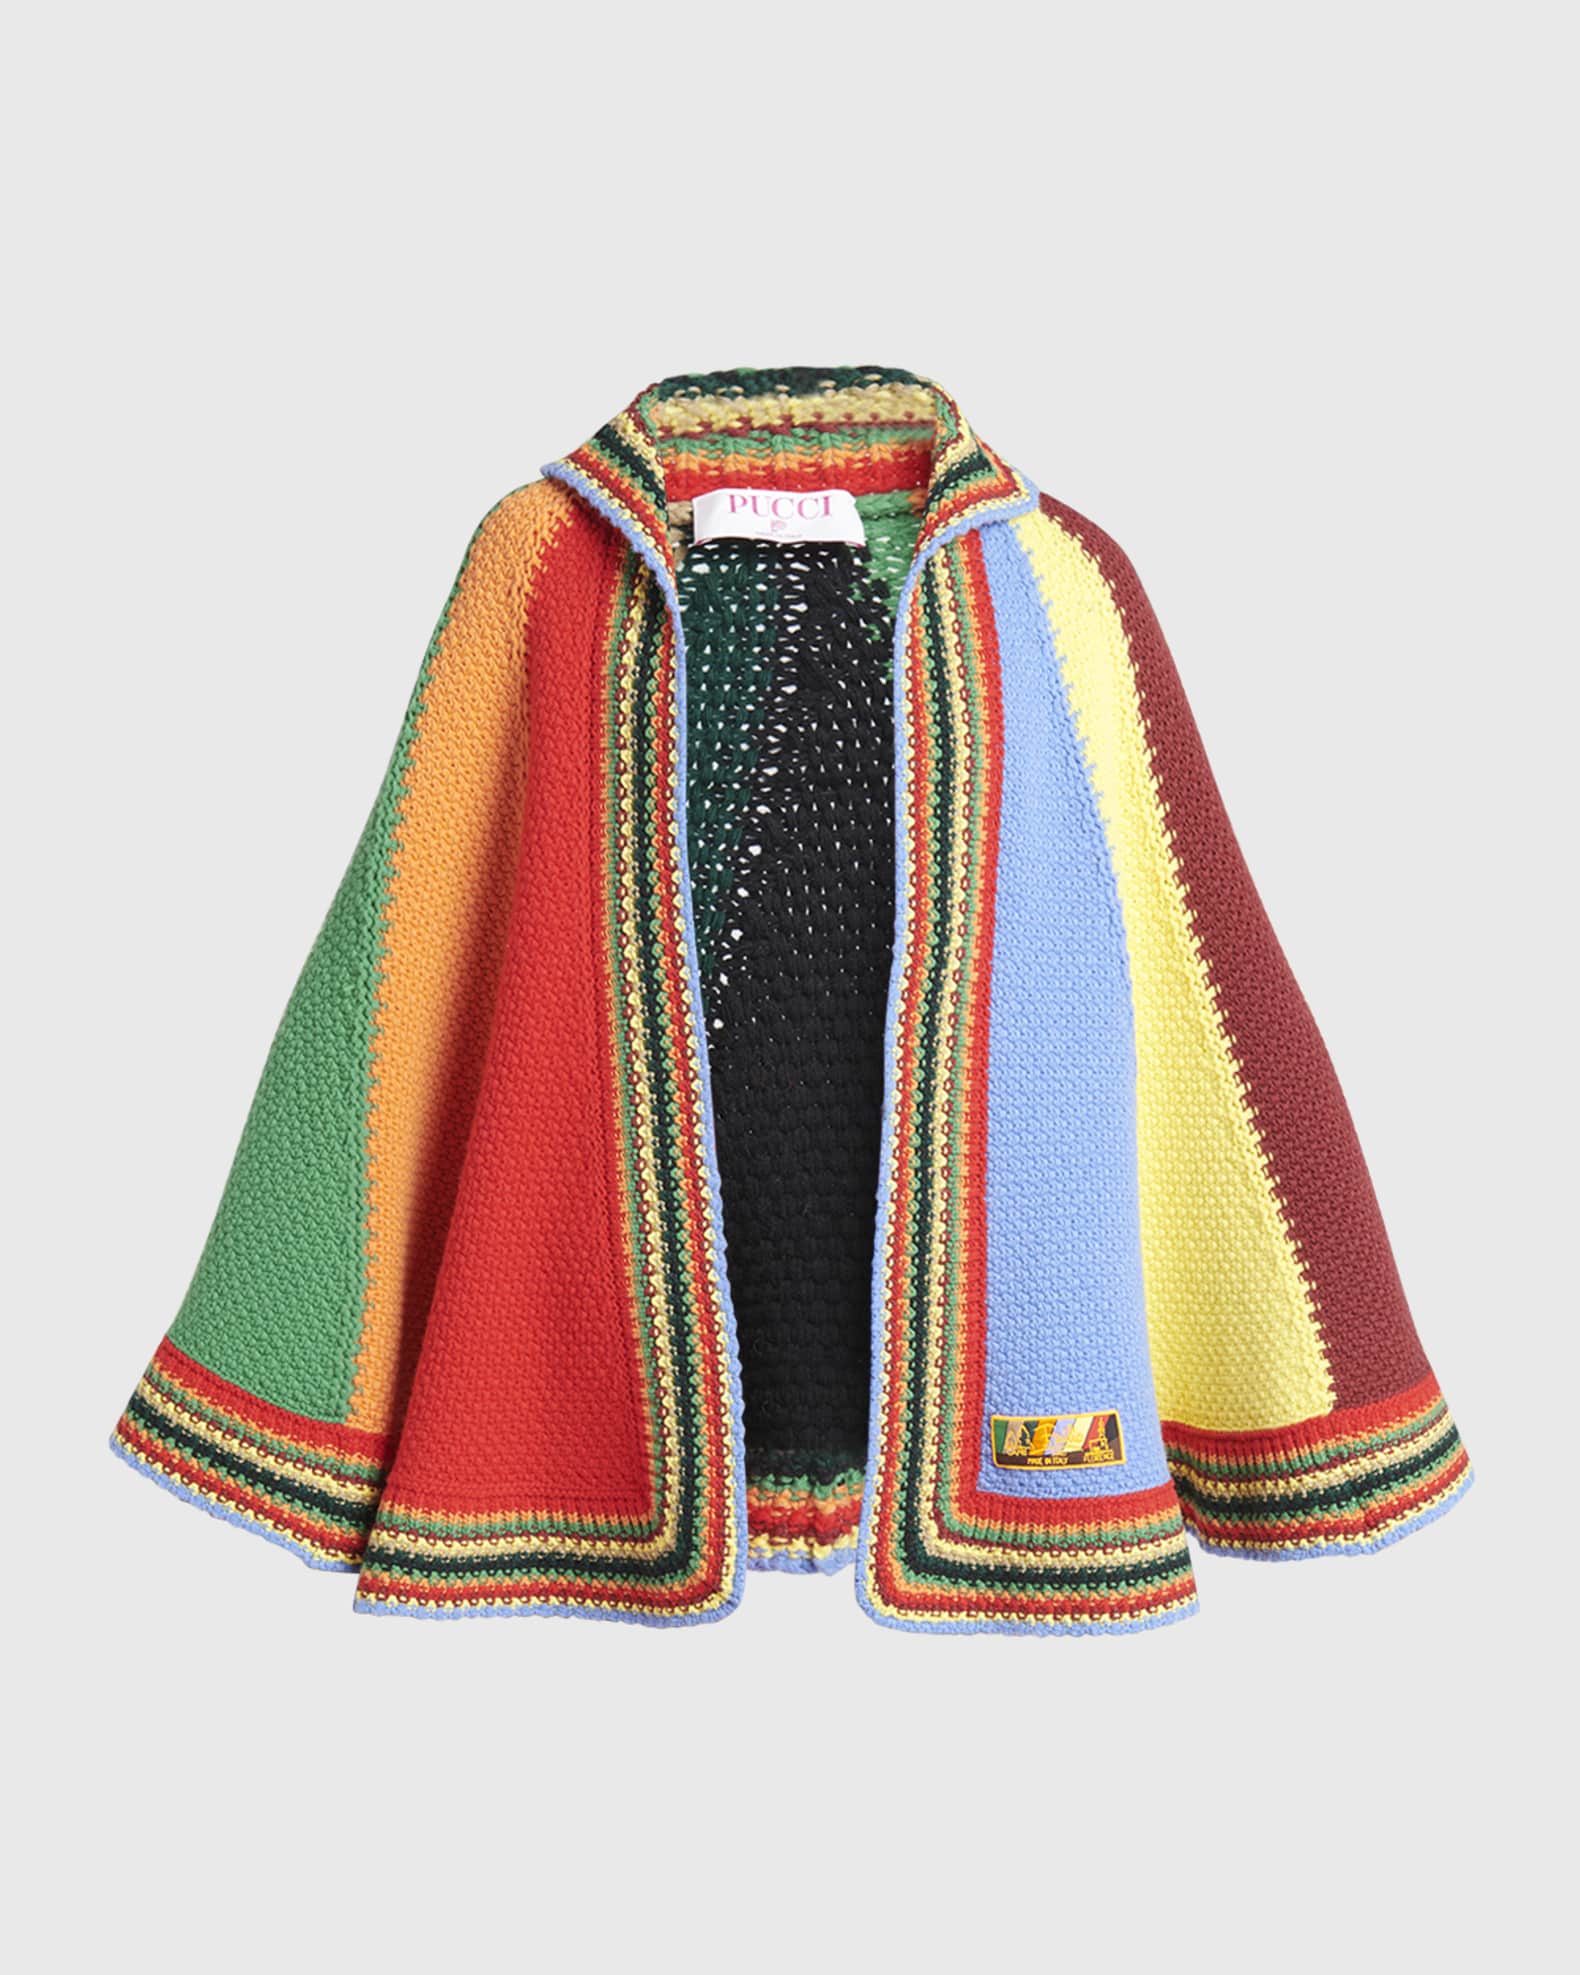 Valentino Garavani Wool Cape Coat with Monogram Lining - Bergdorf